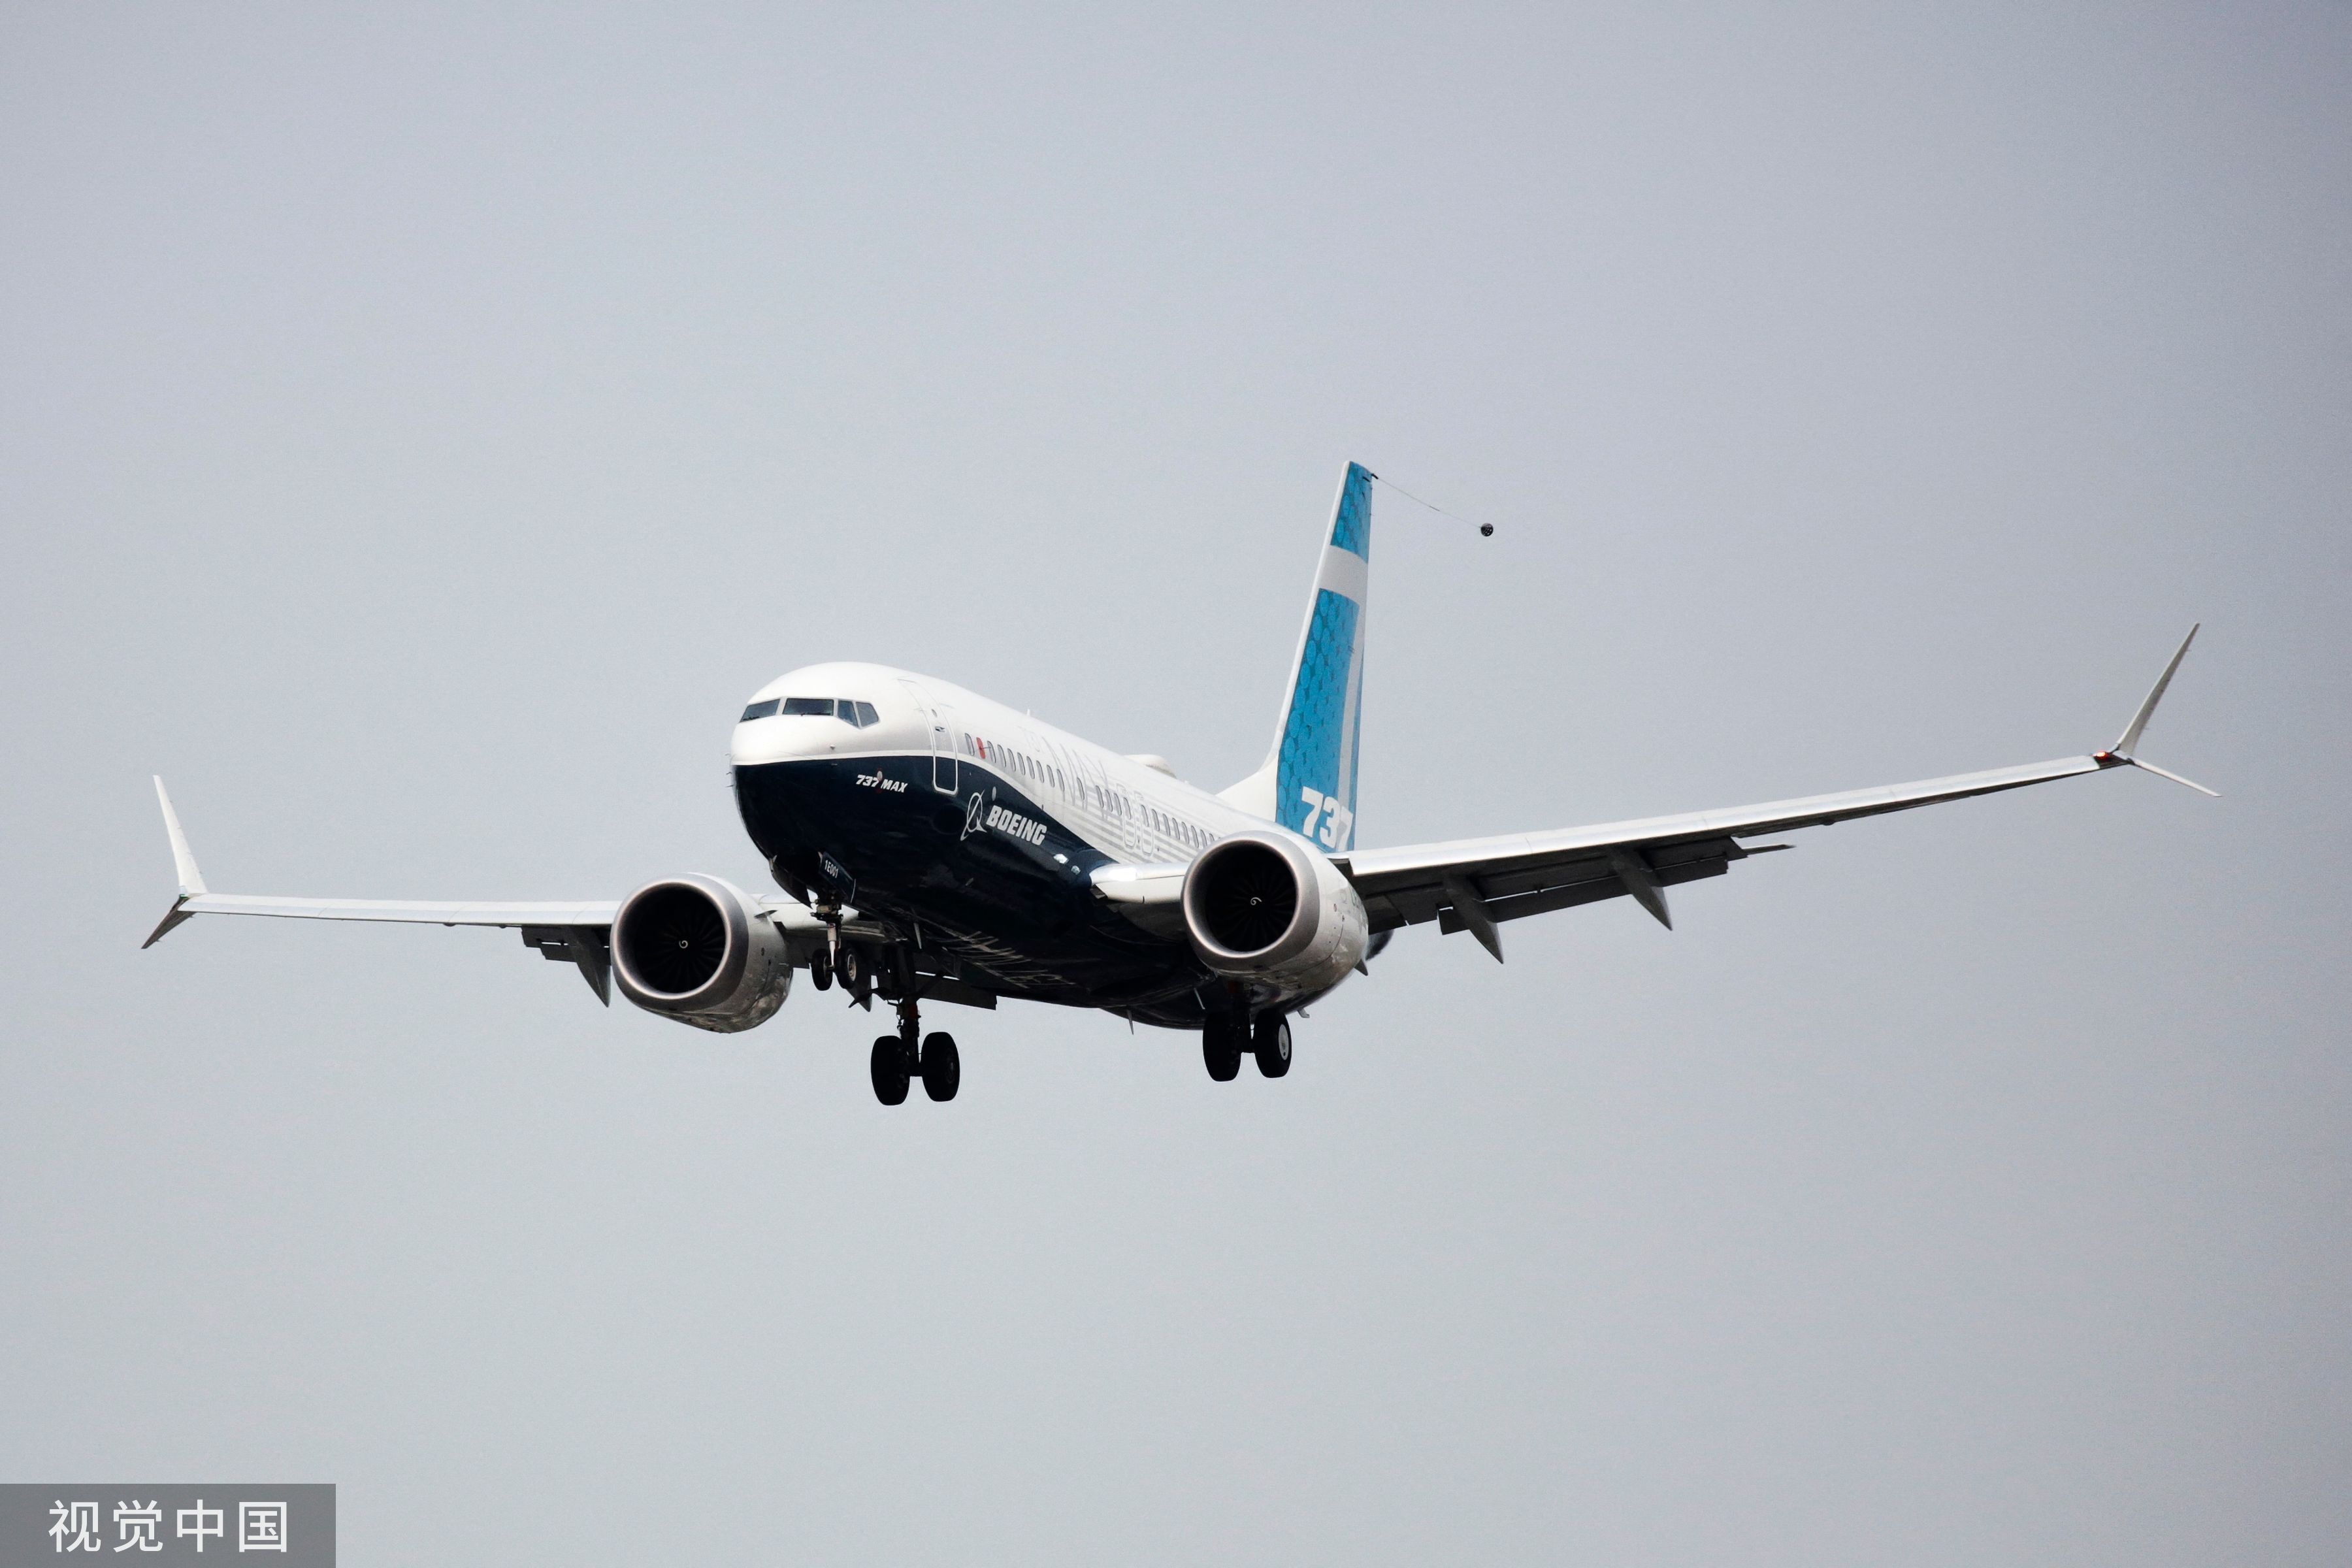 波音737 max空难5年后,美国联邦航空管理局终于宣布调整认证监管凤凰